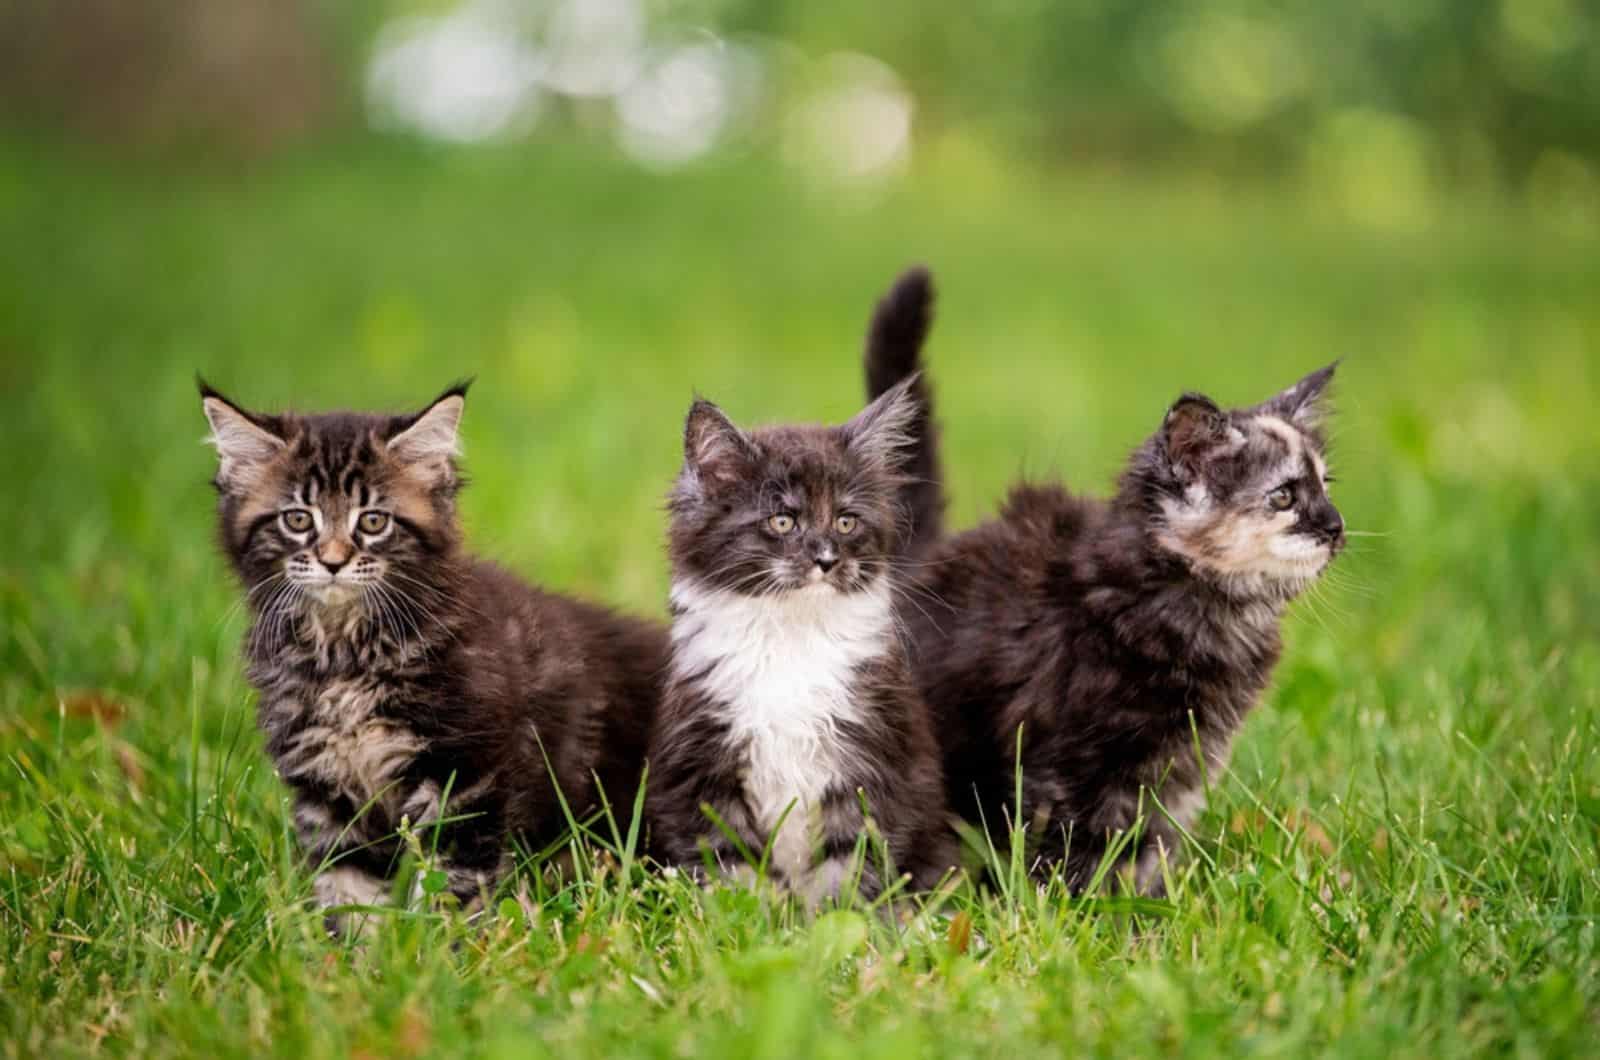   drie donzige Maine Coon kittens lopen op het groene gras.